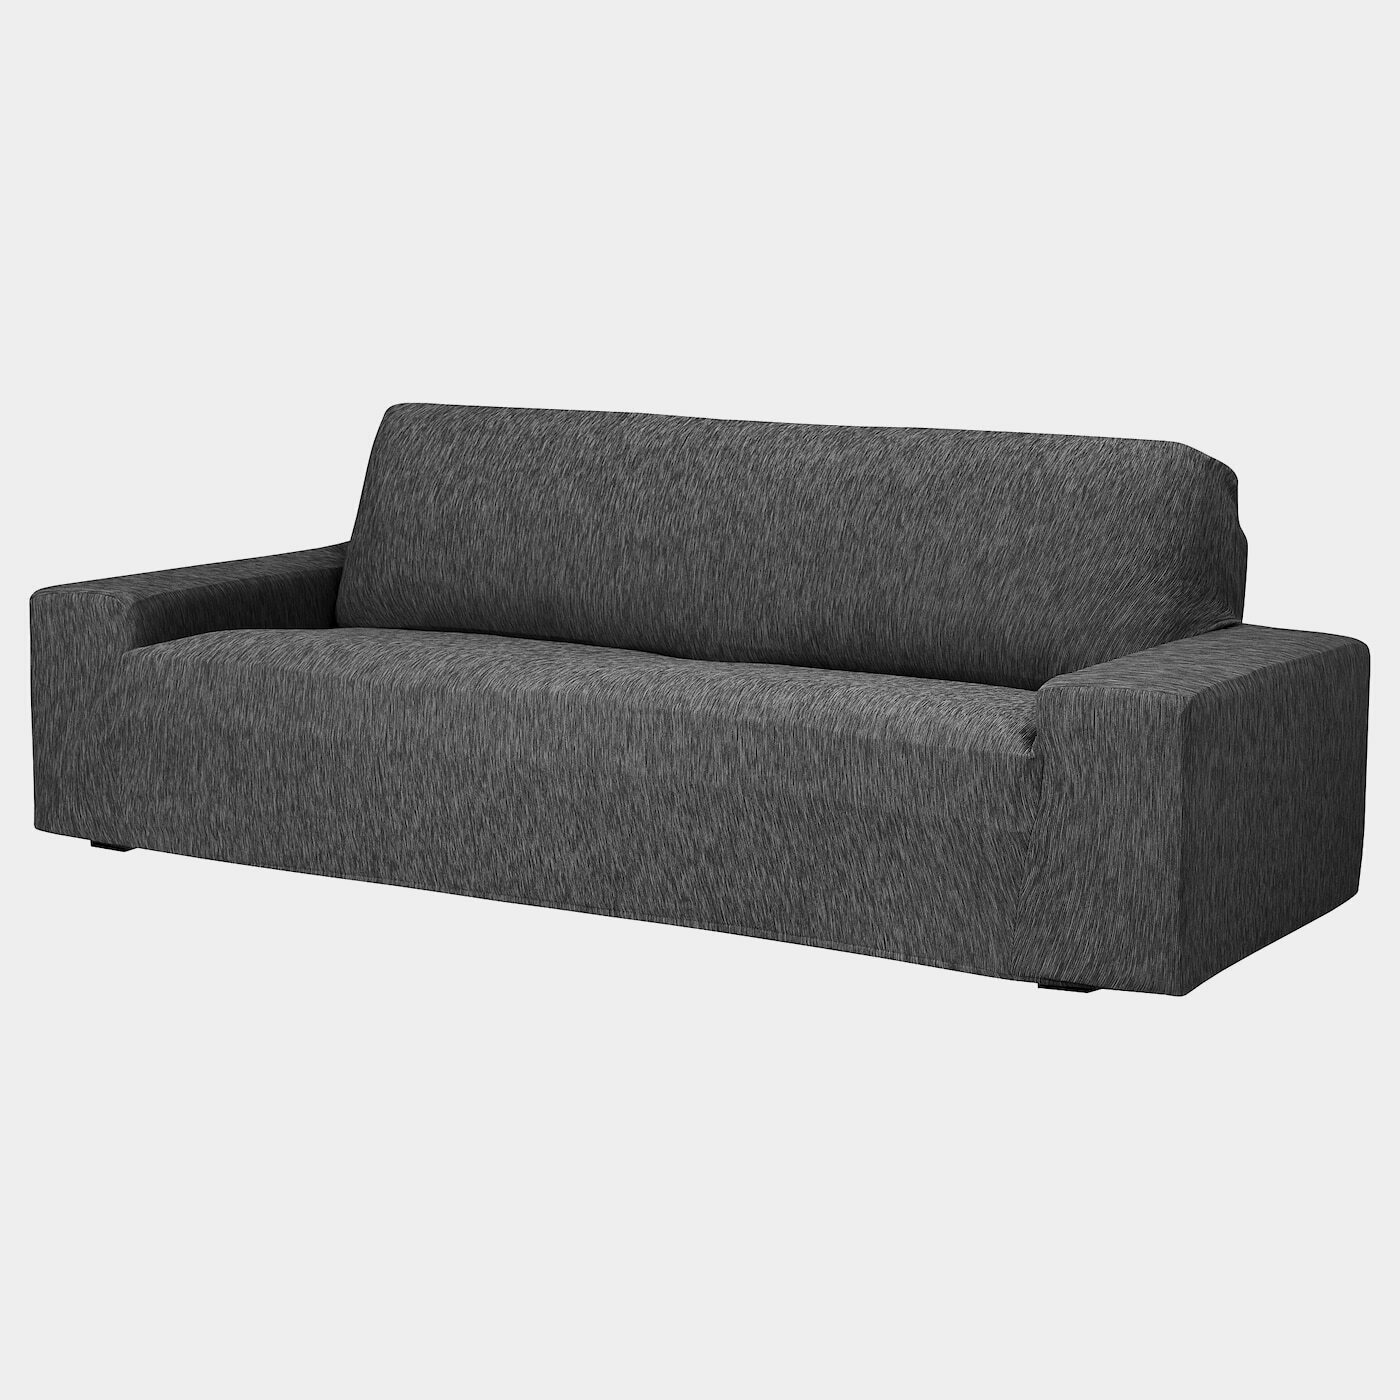 AGERÖD Bezug 3er-Sofa  -  - Möbel Ideen für dein Zuhause von Home Trends. Möbel Trends von Social Media Influencer für dein Skandi Zuhause.